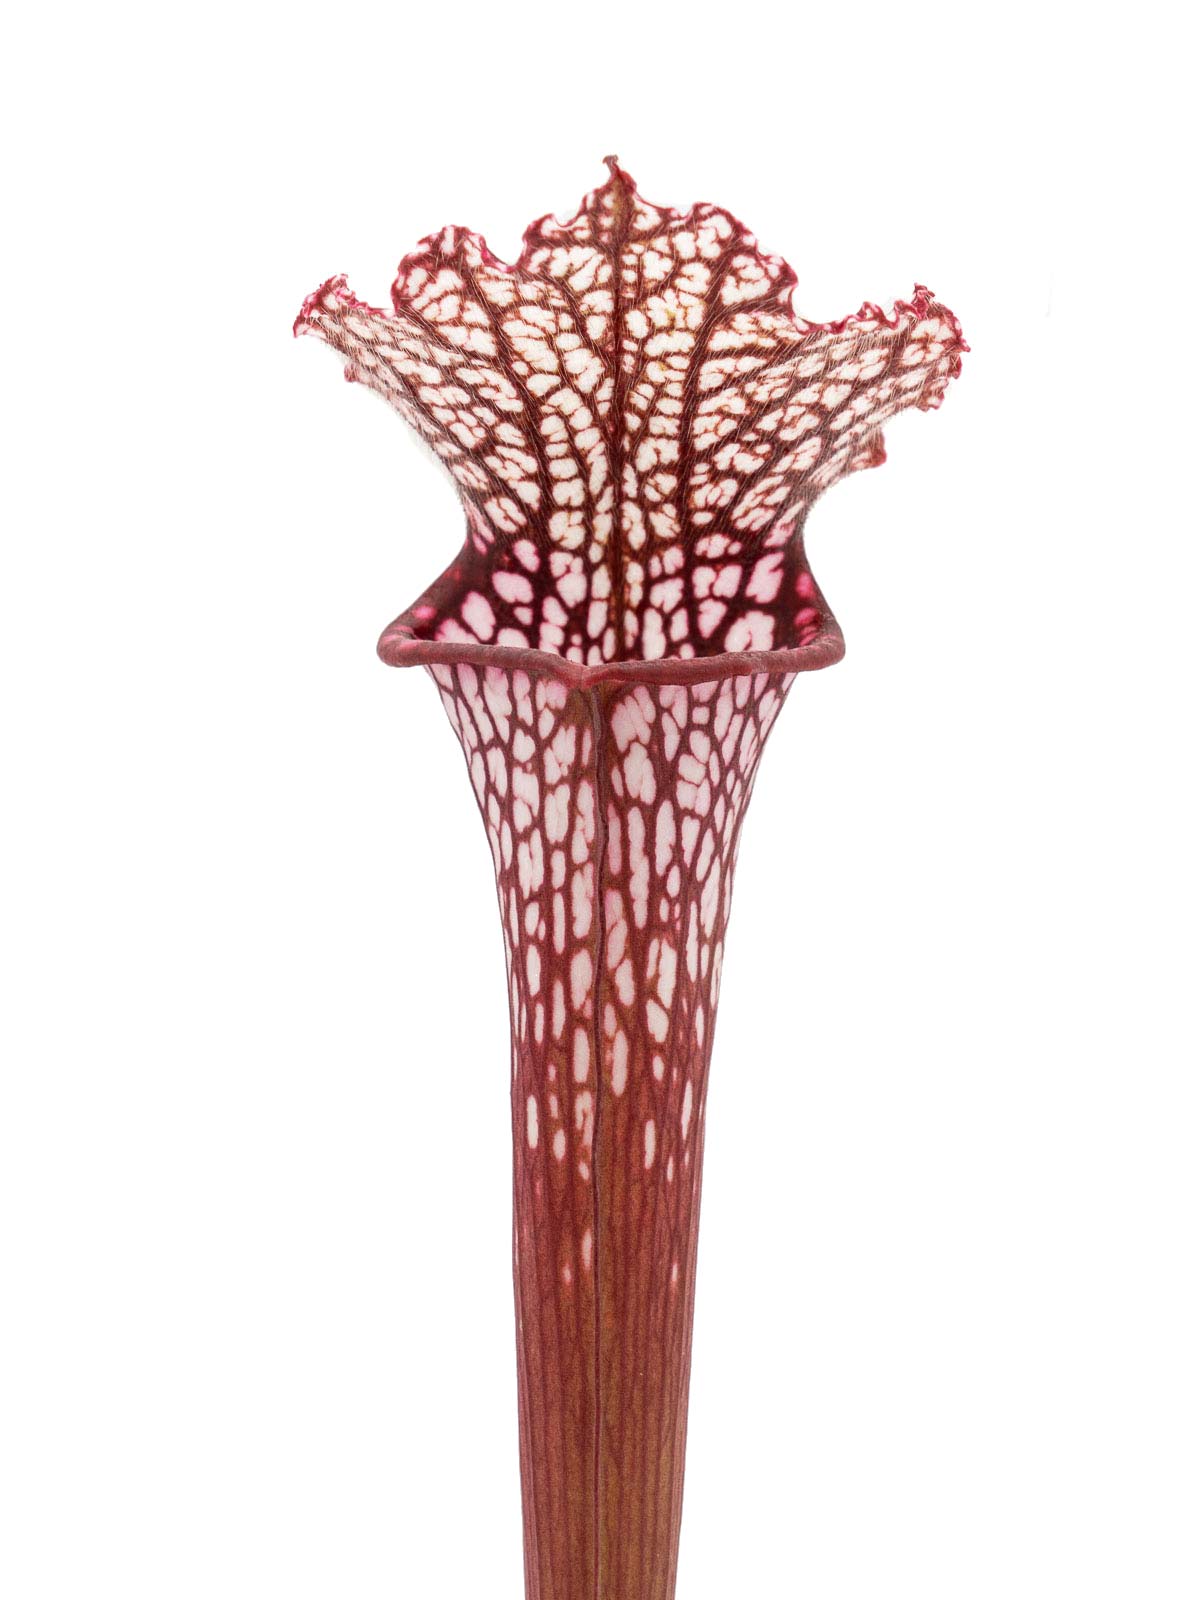 Sarracenia leucophylla - red form, Dr. Eberhad König, Clone B